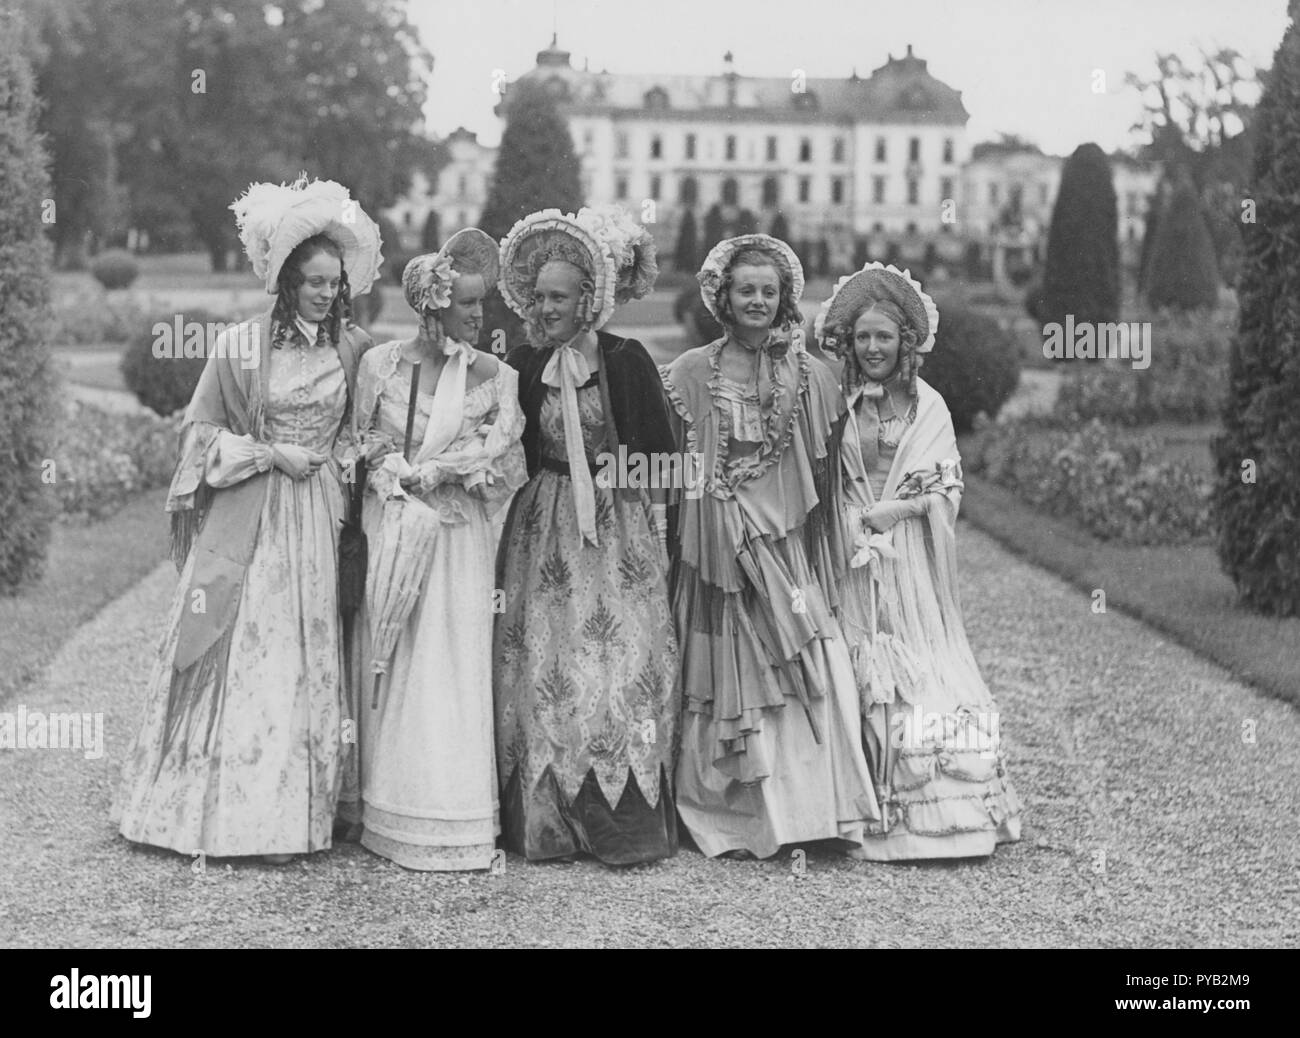 Bonnets Poke. Un groupe de cinq jeunes femmes dans le parc du château, Drottning holm pendant le tournage du film Filmen om Emelie Högqvist 1939. Ils sont tous habillés en femmes de l'année 1835. En particulier les chapeaux qui sont appelés Poke bonnet qui est entré en mode au début du 19ème siècle. Banque D'Images